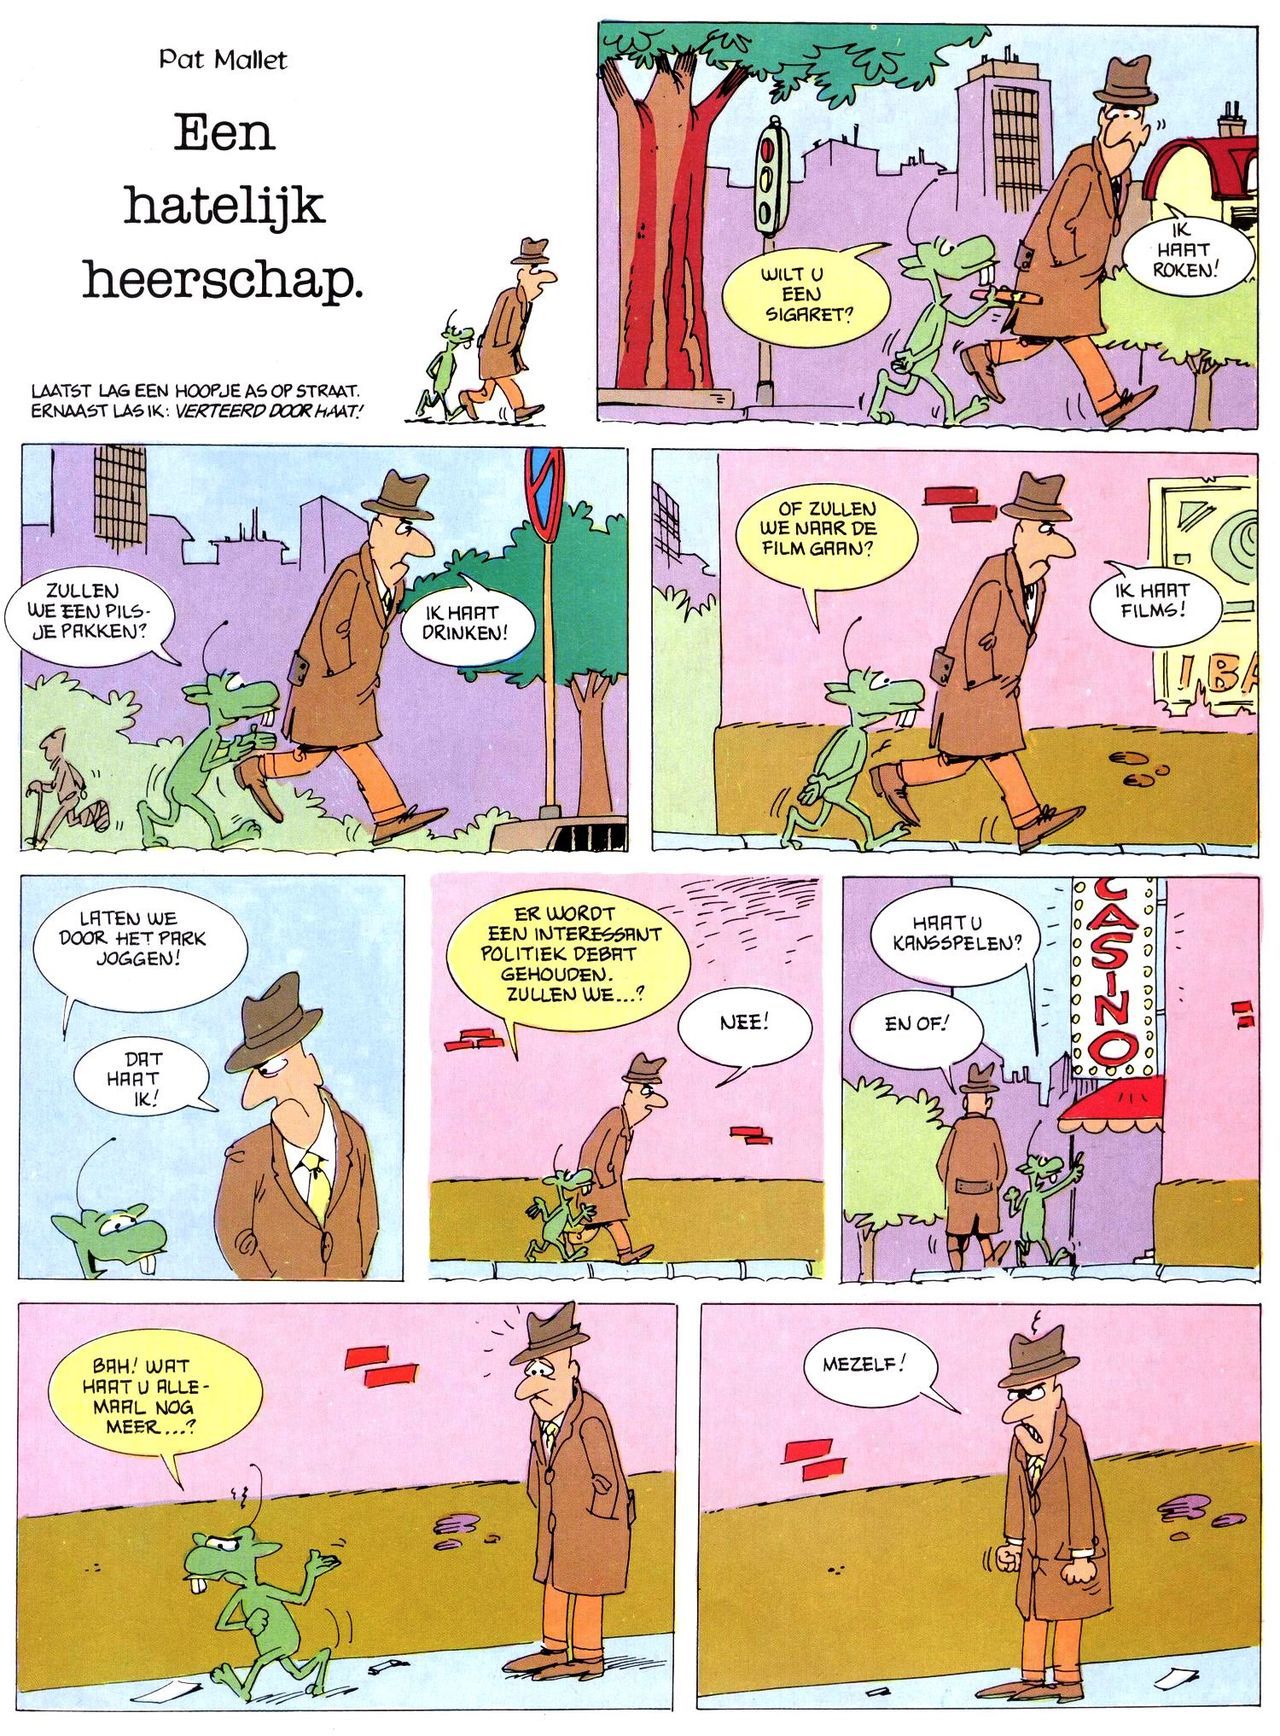 Het Is Groen En Het.. - 02 - Verboden Op Het Gras Te Lopen (Dutch) Een oude humoristische serie van Pat Mallet 10